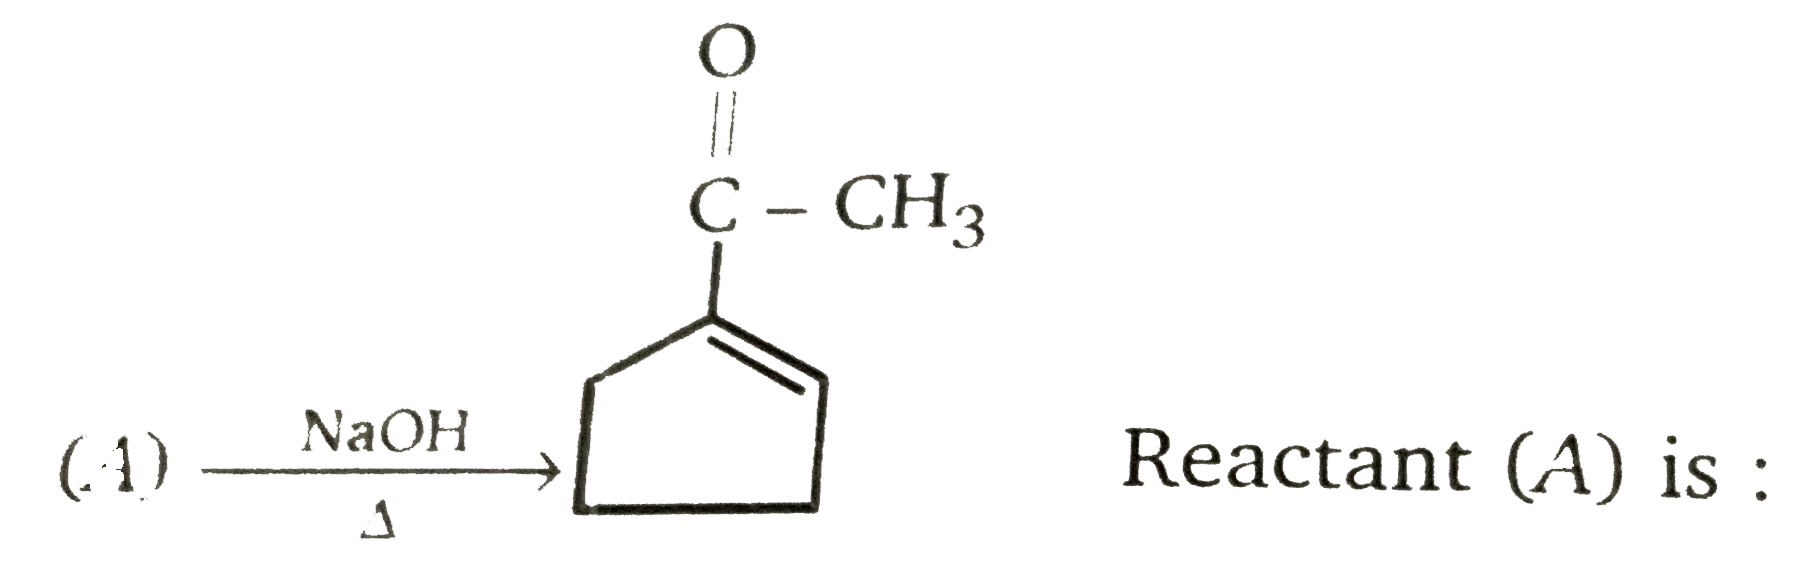 Reactant (A) is,